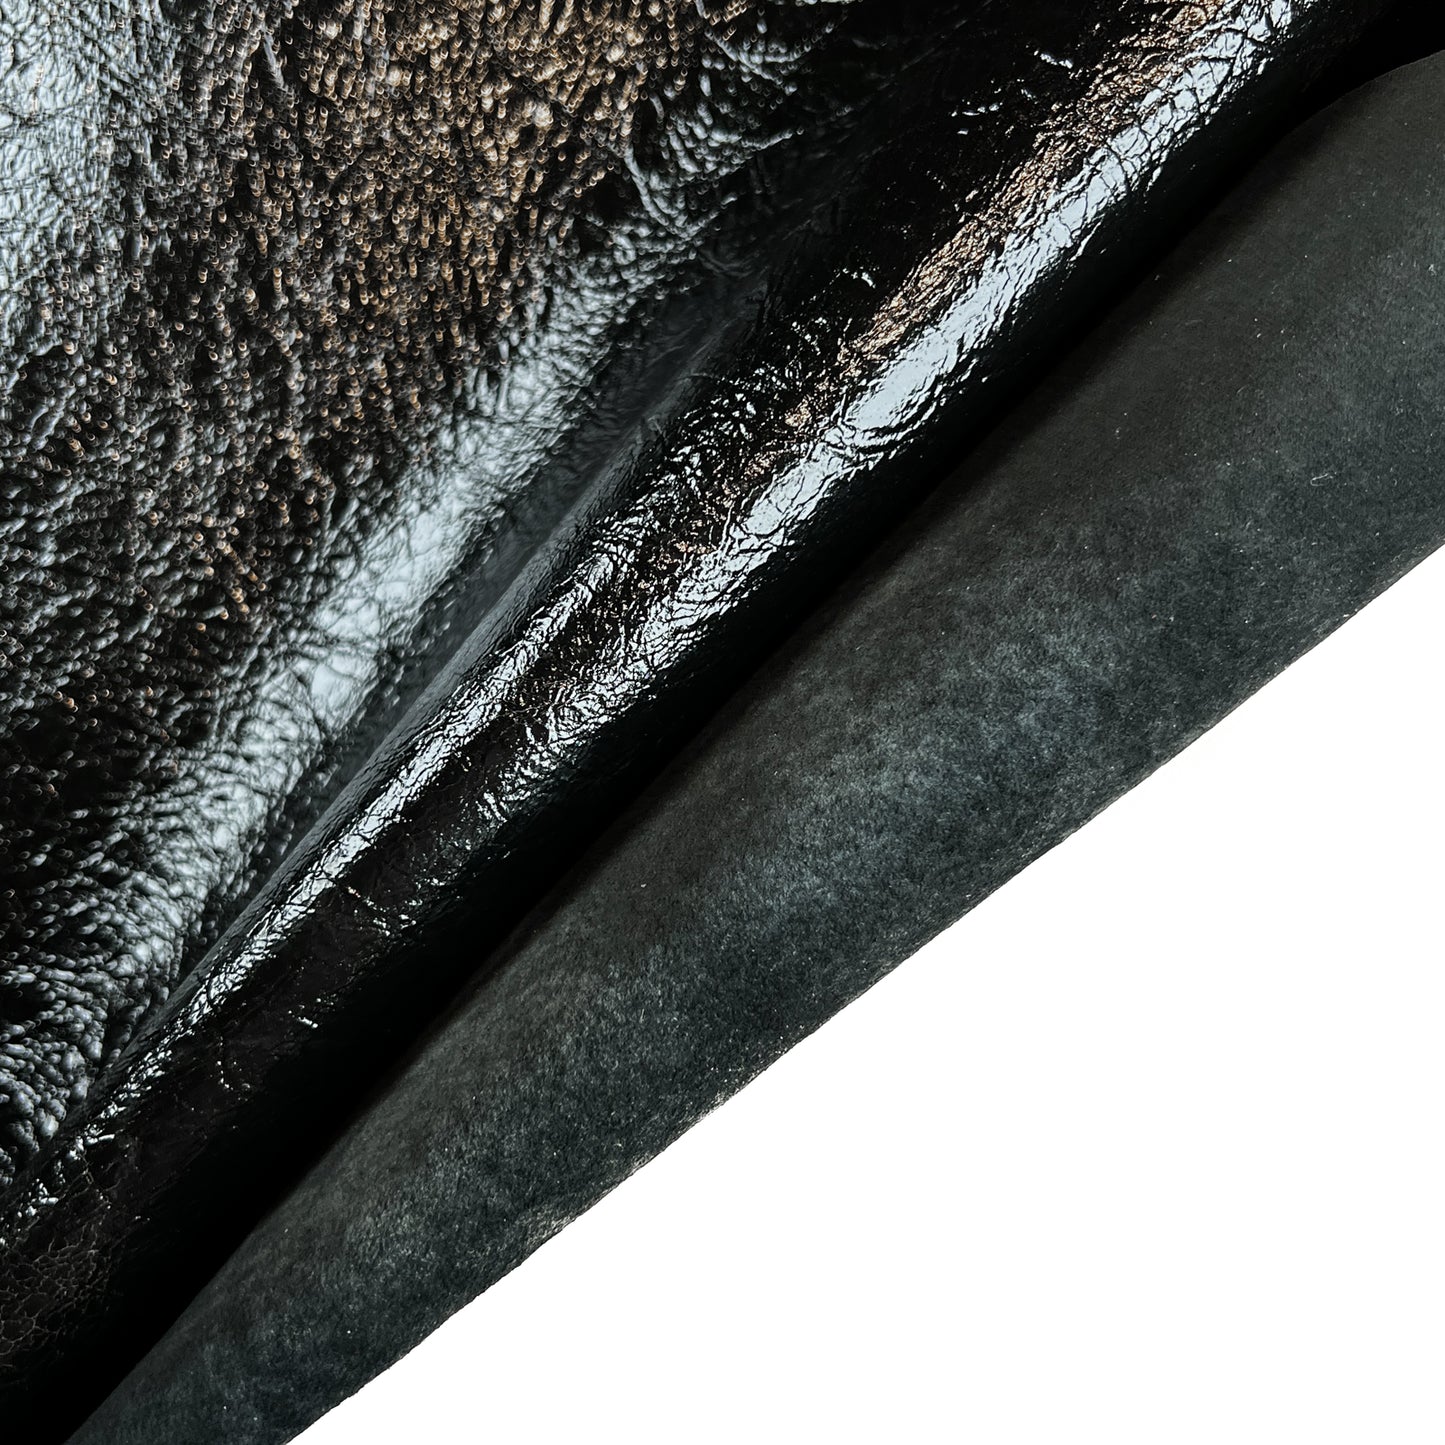 Black Vintage Lambskin - Bonded Leather 0.8mm/2oz / BLACK VINTAGE 1439